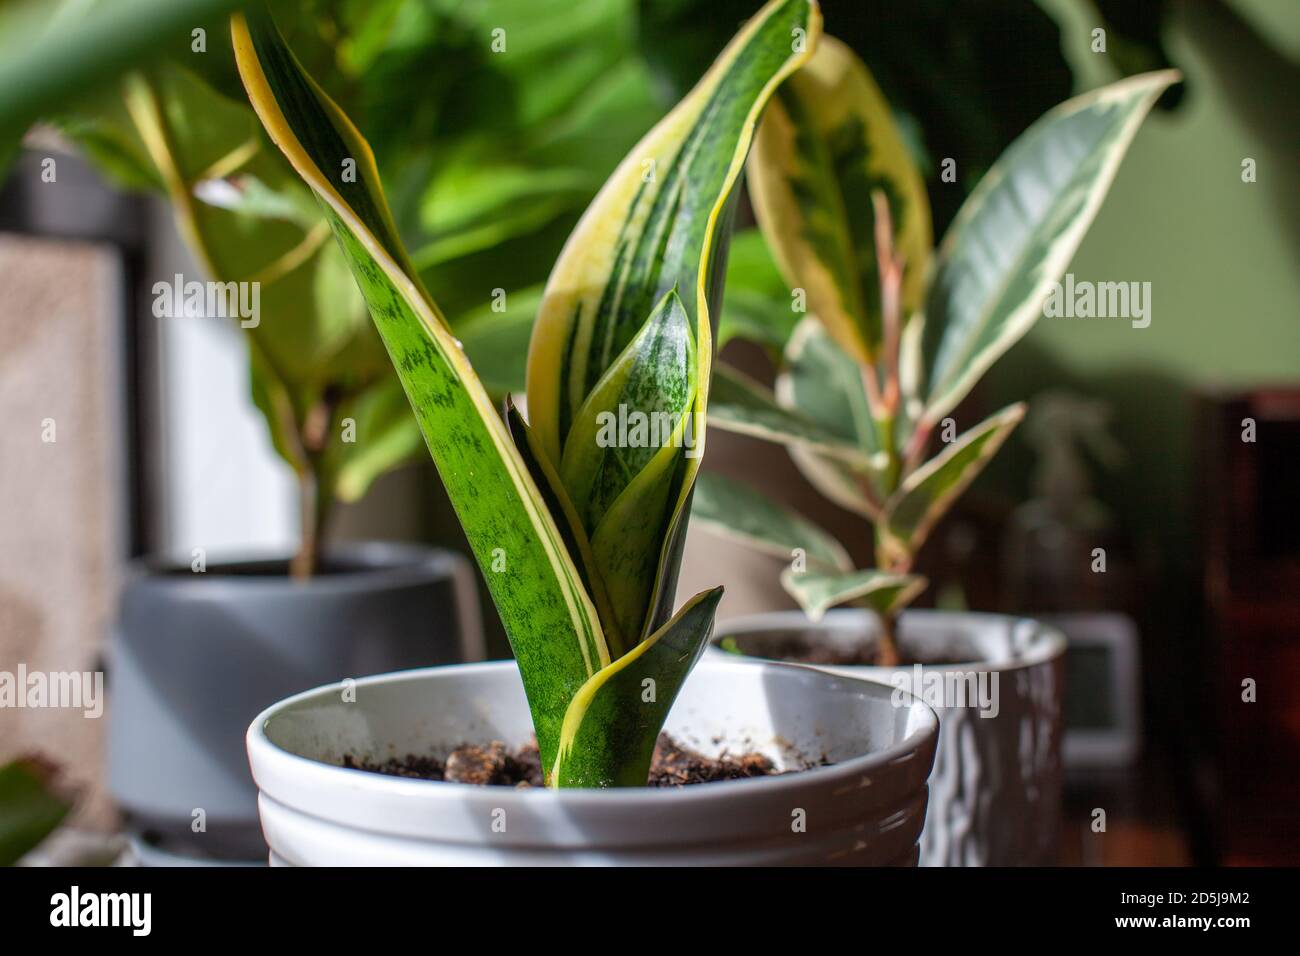 Une jeune plante de serpent en pleine croissance (Dracaena trifasciata, langue de la mère-en-droit) est assise dans une petite casserole blanche comme plante de maison par une fenêtre avec de nouvelles feuilles de brou Banque D'Images